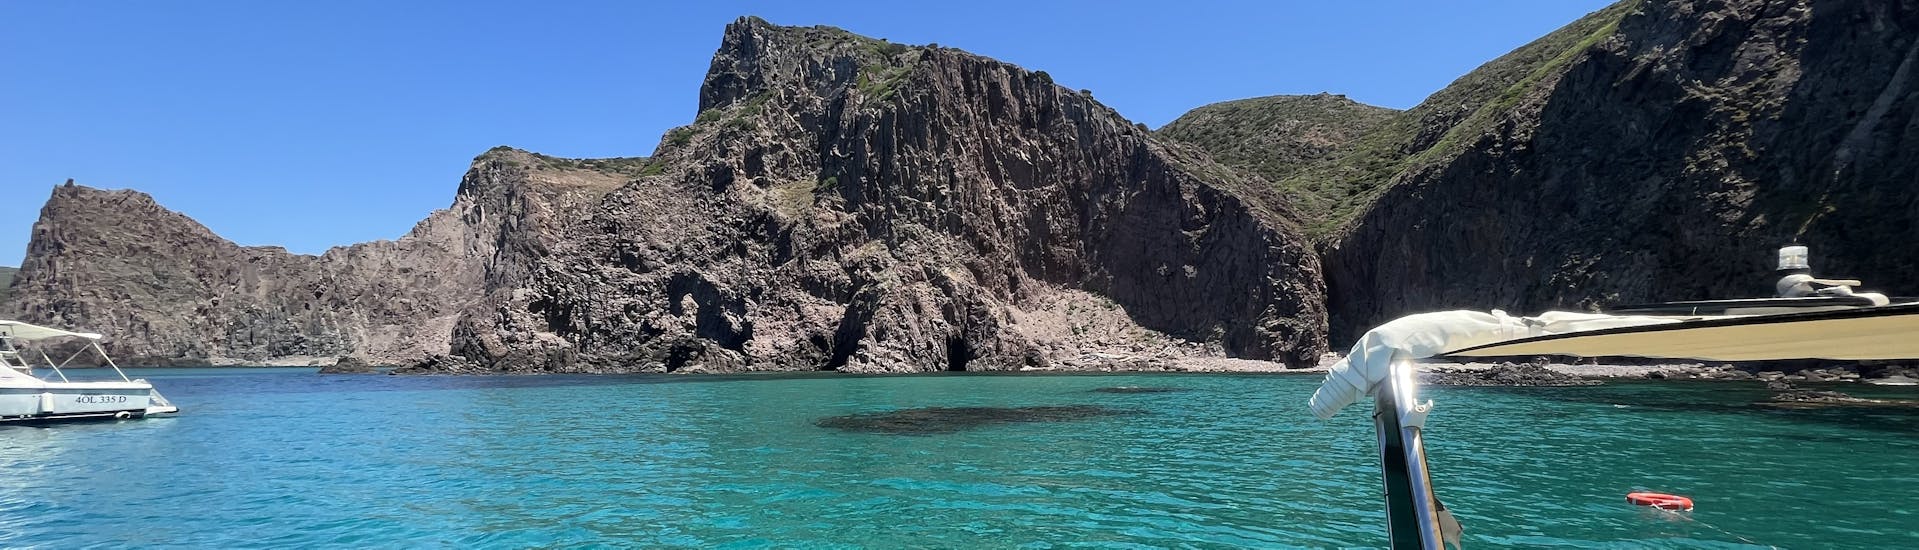 Arrêtez-vous dans une crique pendant l'excursion en bateau semi-rigide privé autour de l'île de Sant'Antioco avec snorkeling avec Blue Wave Sant'Antioco.